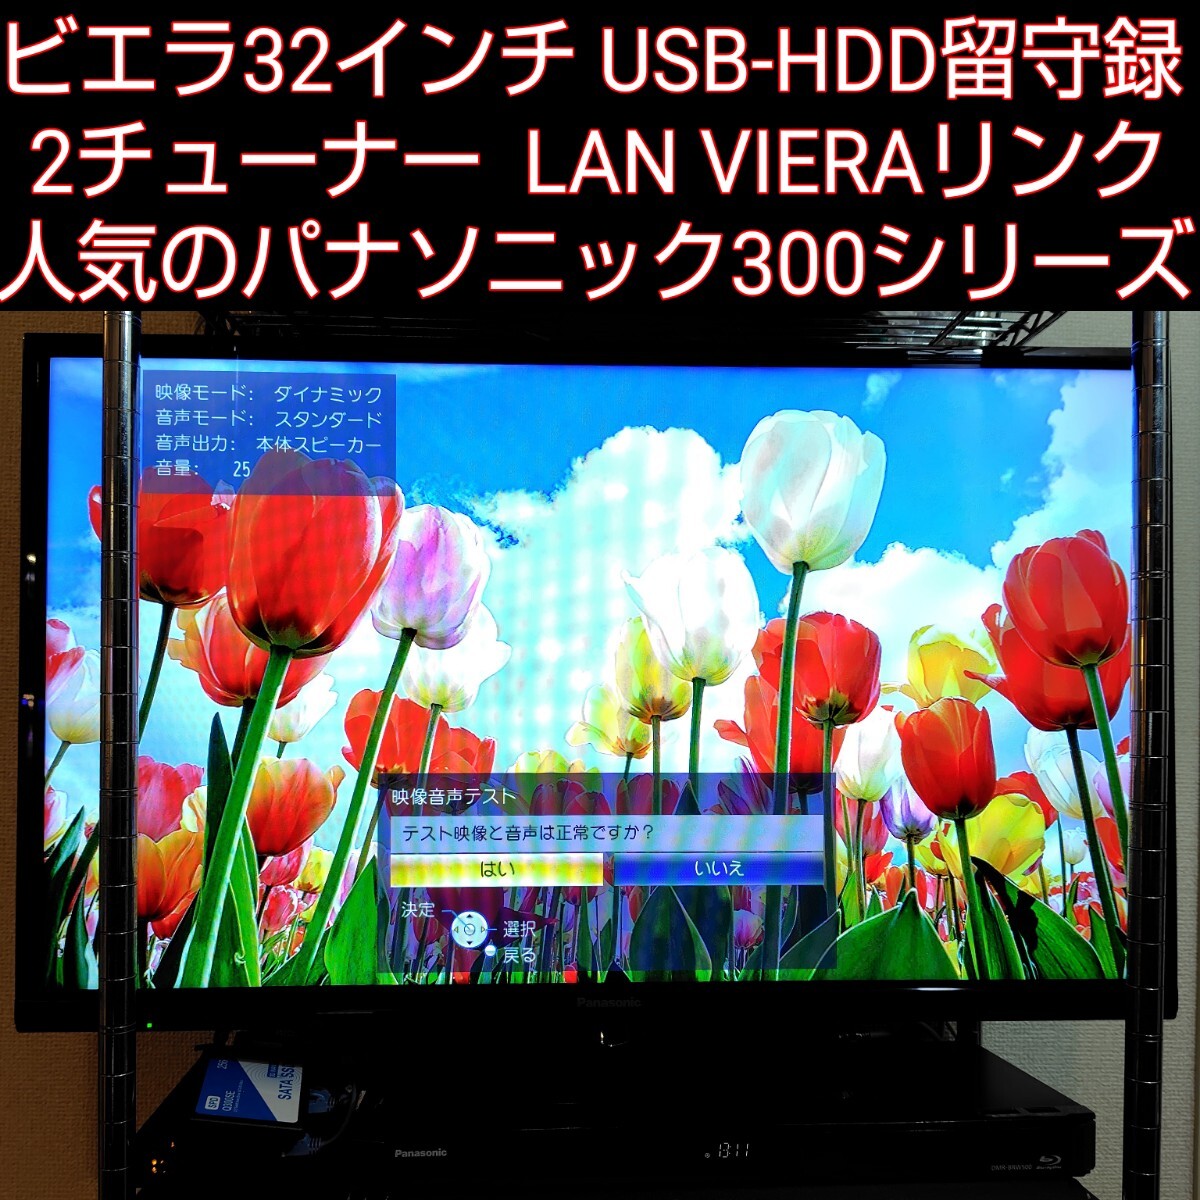 引取OK 美品 32 パナソニック ビエラ TV VIERAリンク 連動 LAN USB-HDD留守録 HDMI2系統+ビデオ/Dデジタル入力 ISP液晶 高画質ハイビジョン_画像1